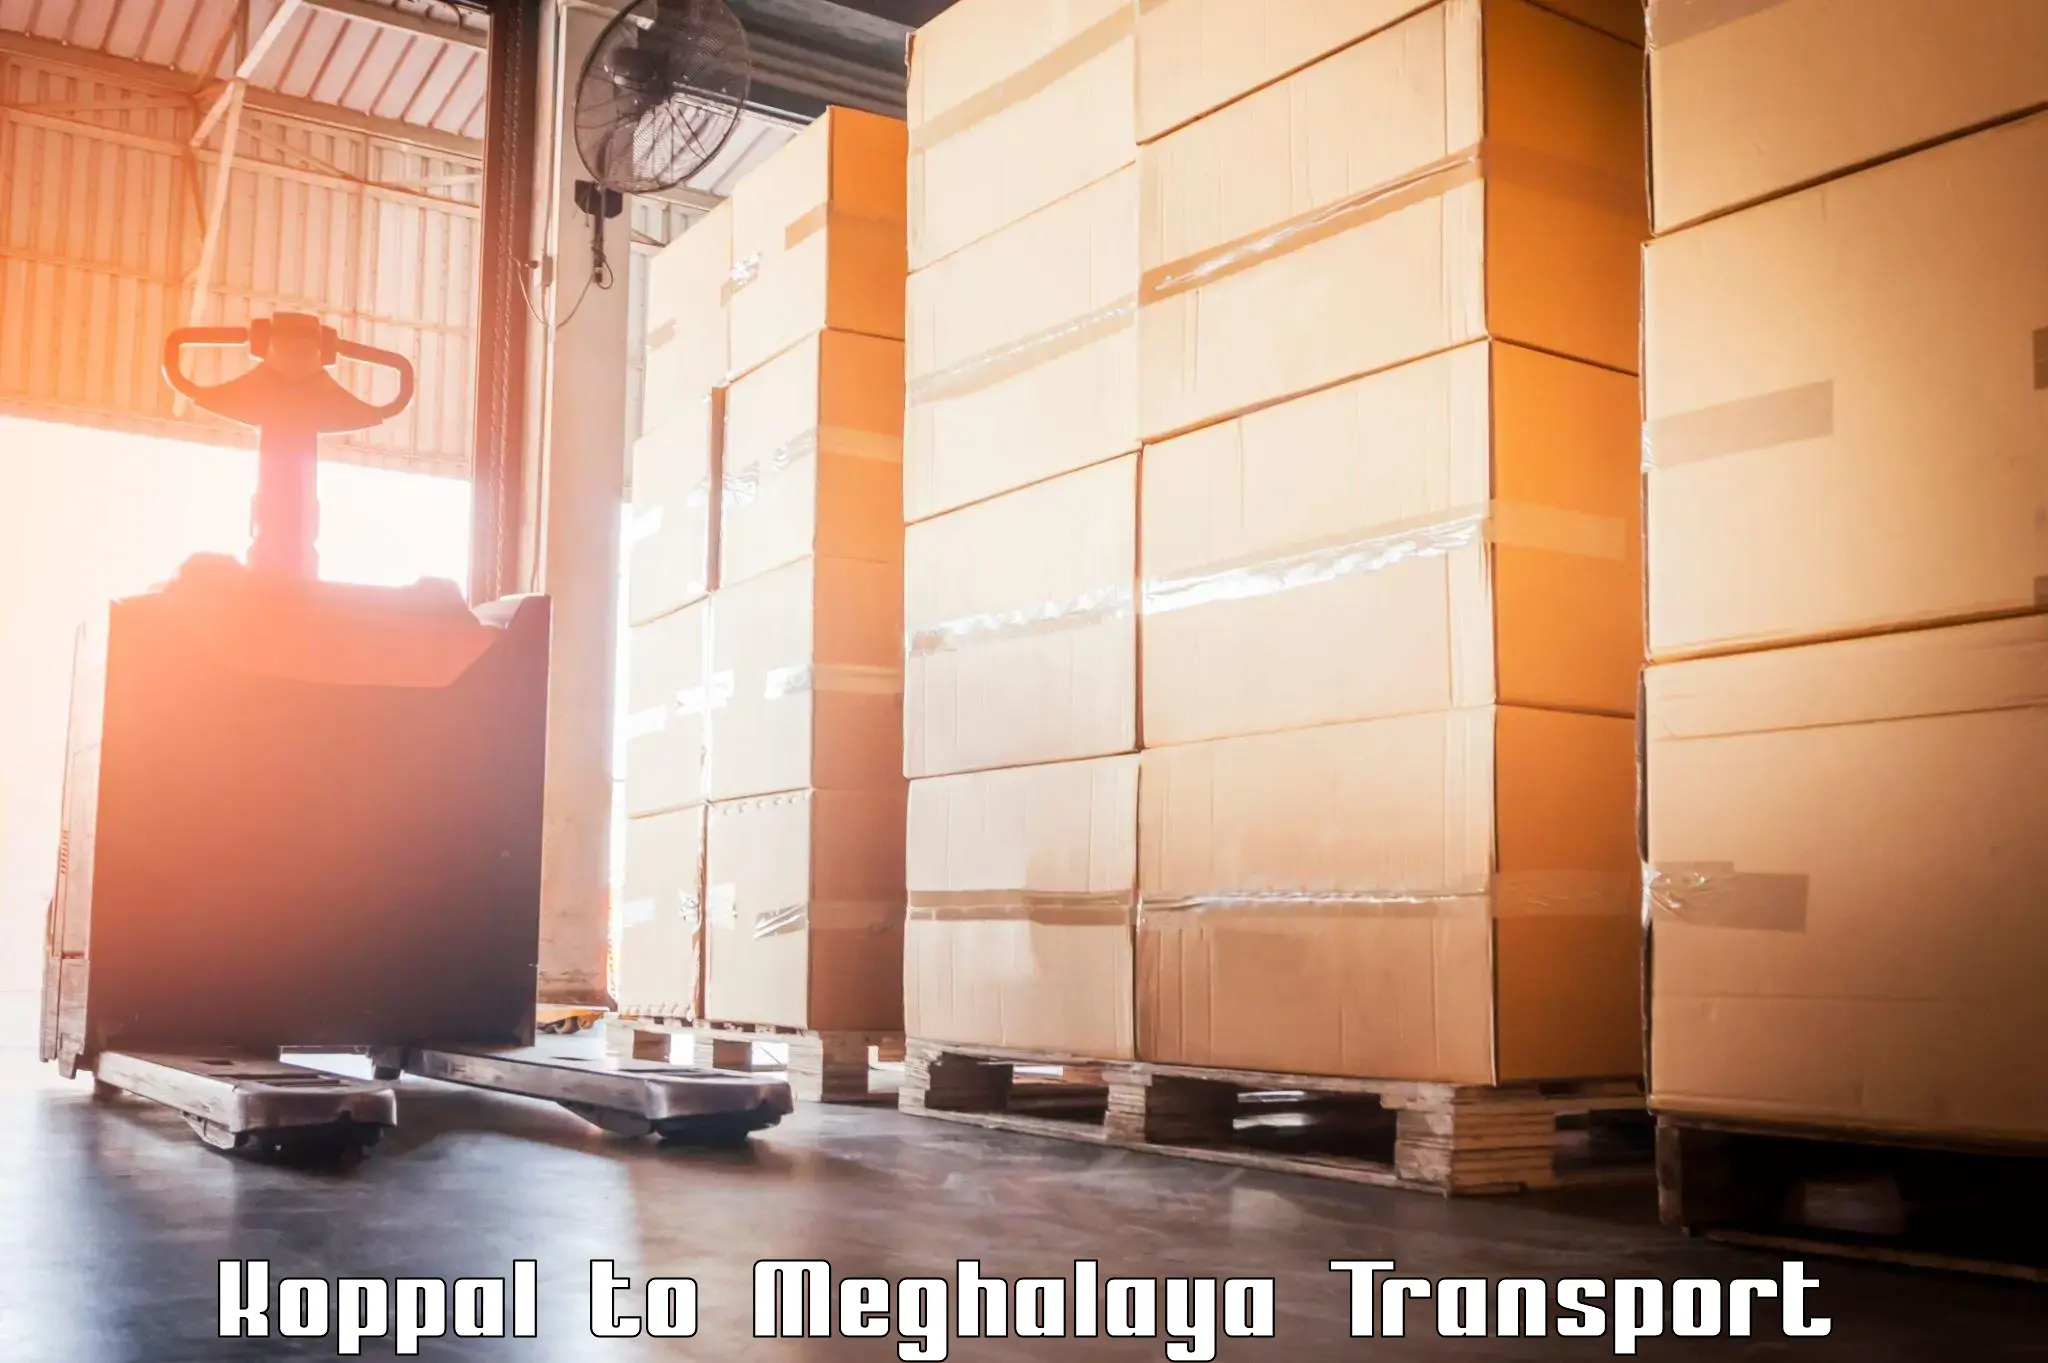 Daily parcel service transport Koppal to Meghalaya